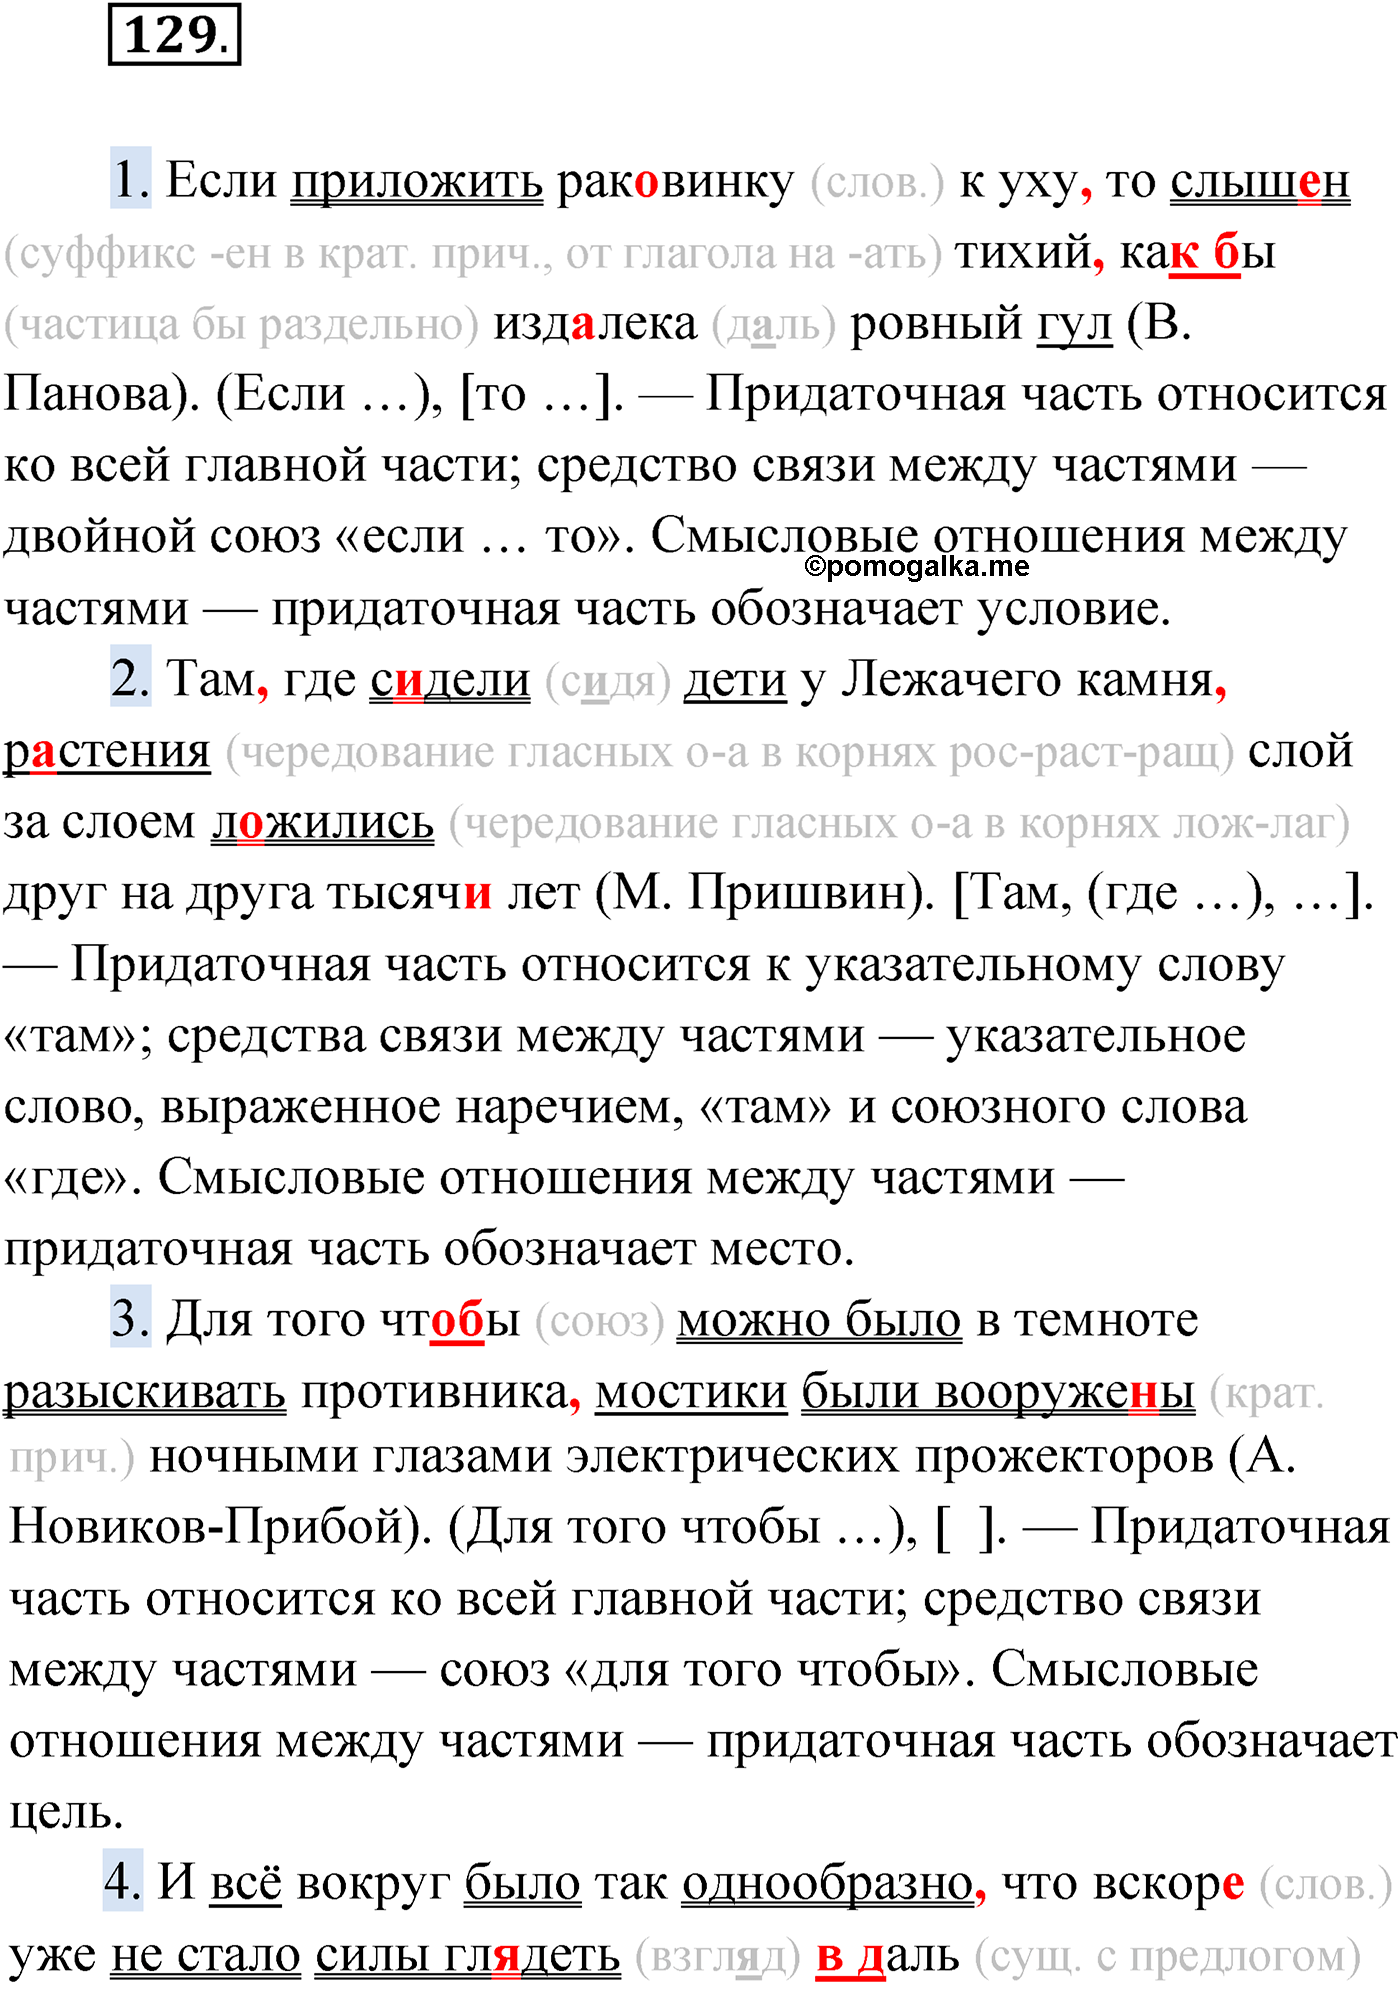 упражнение №129 русский язык 9 класс Мурина 2019 год